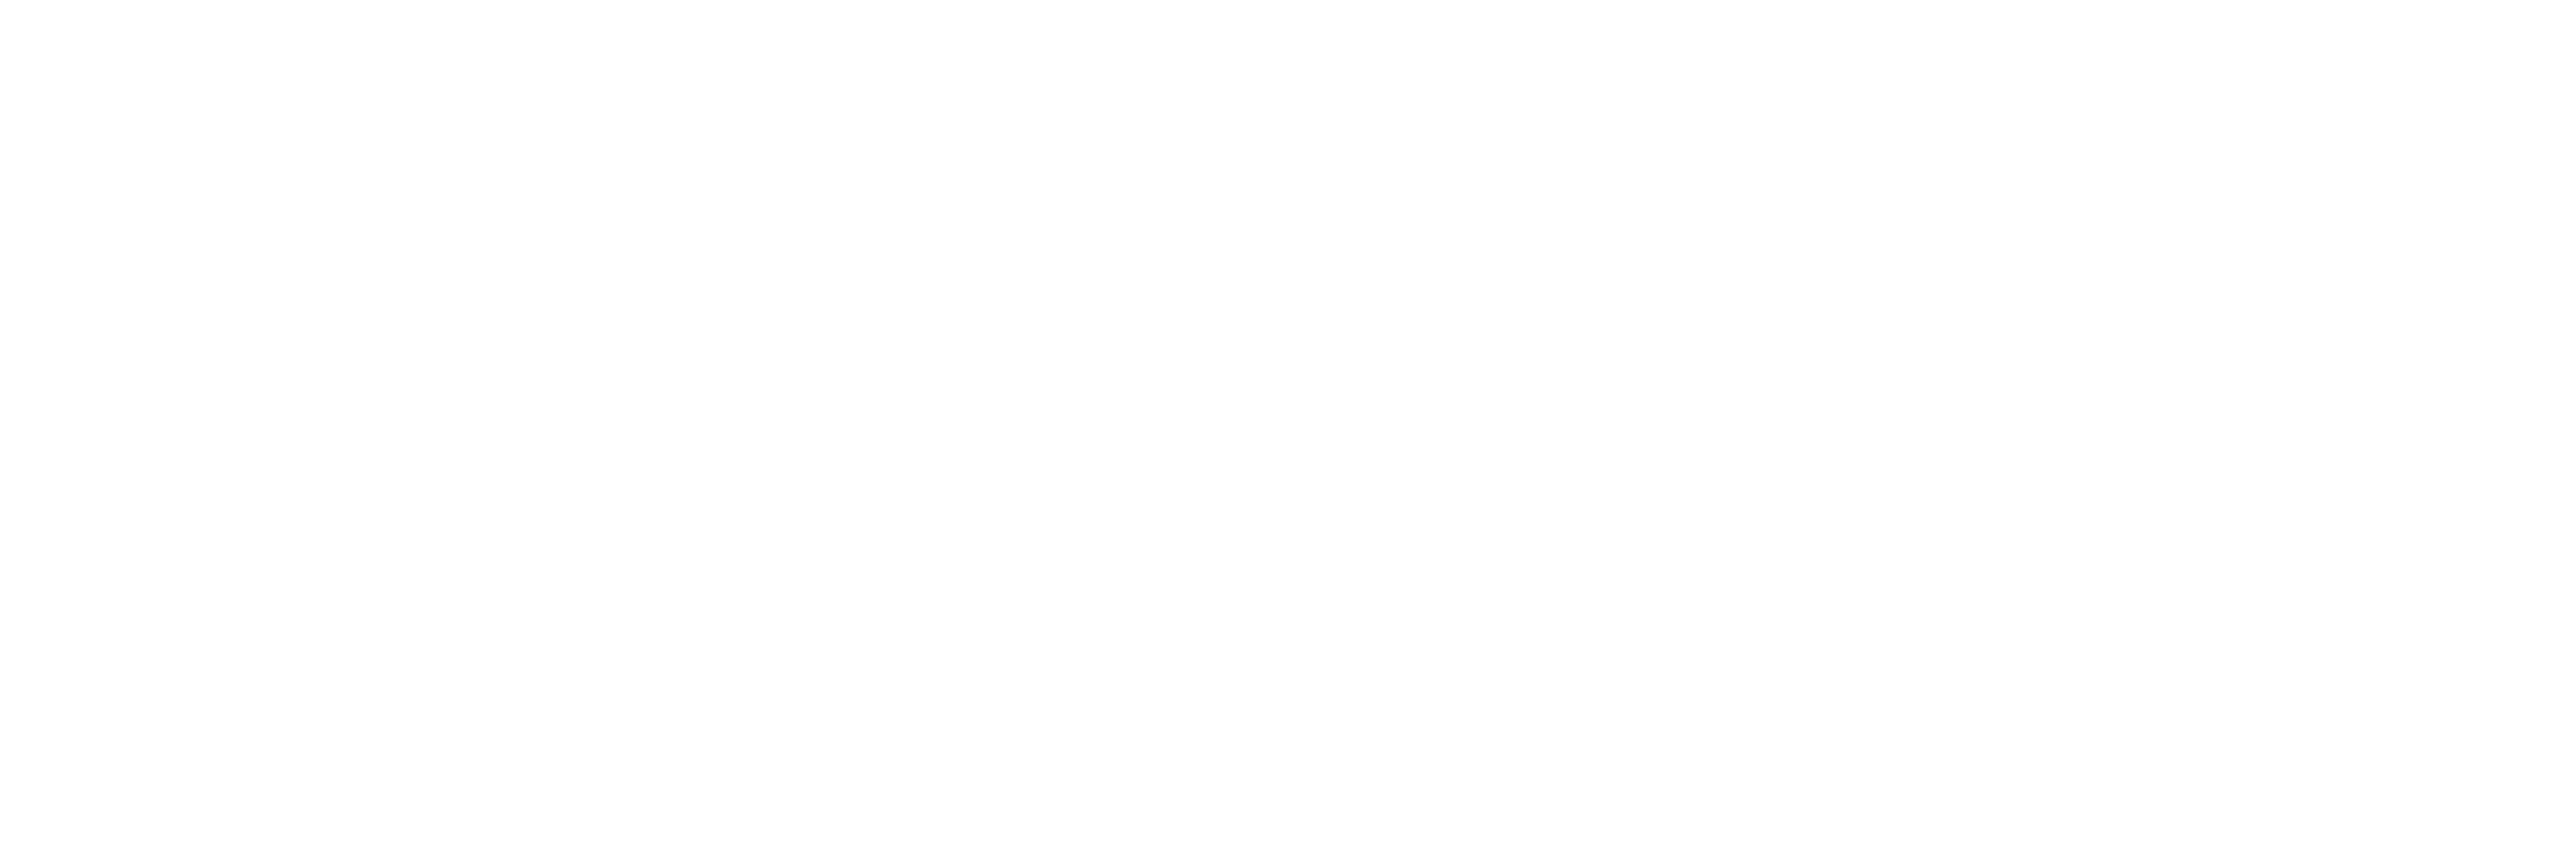 Joint council logos